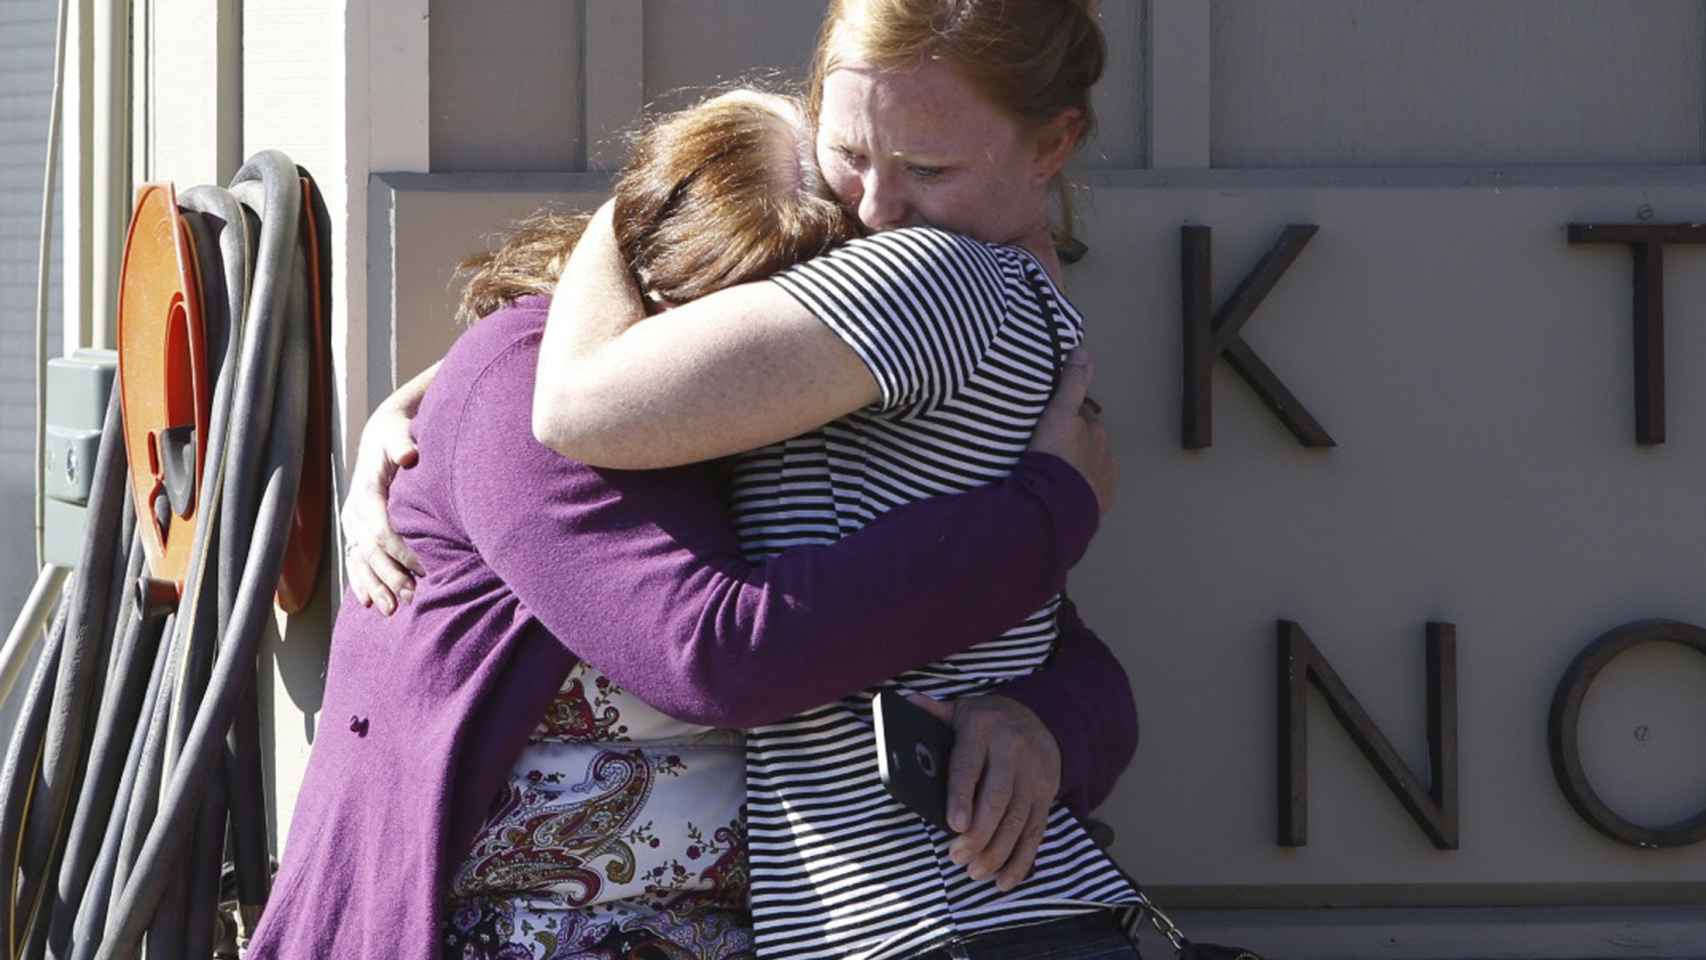 Dos alumnas de la universidad se abrazan tras el tiroteo / Reuters